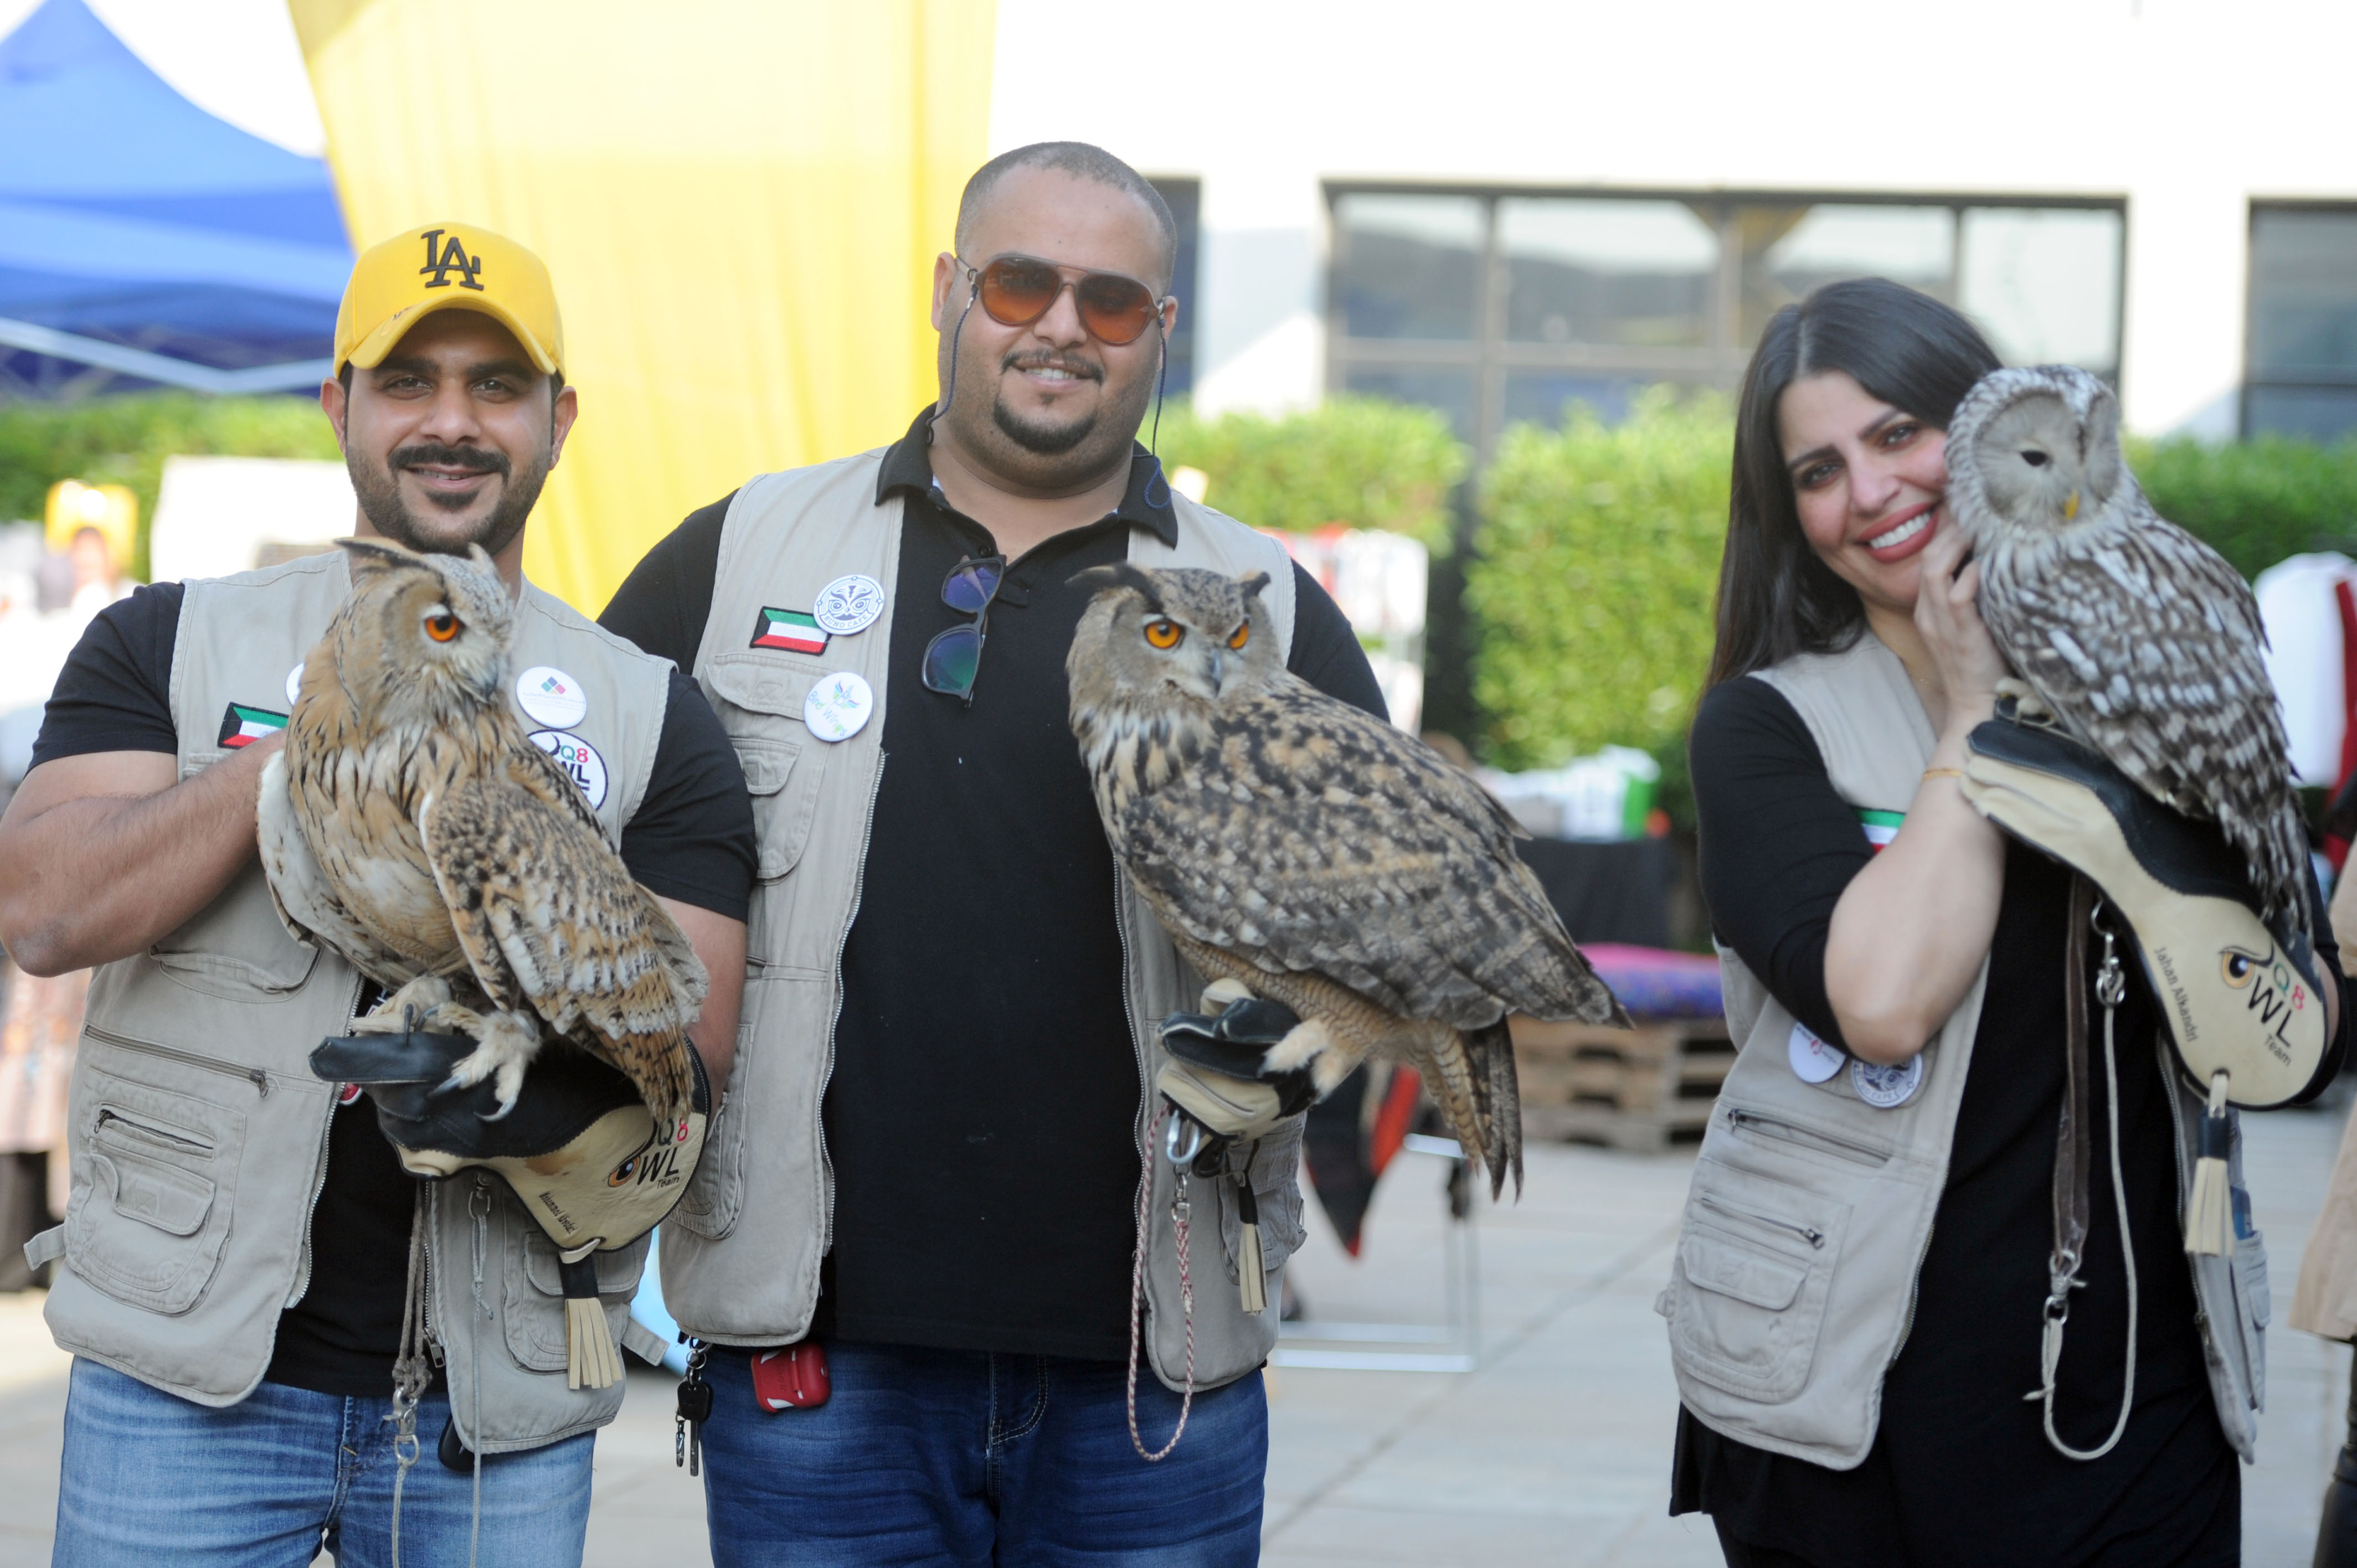 Members of Kuwait Owl Team